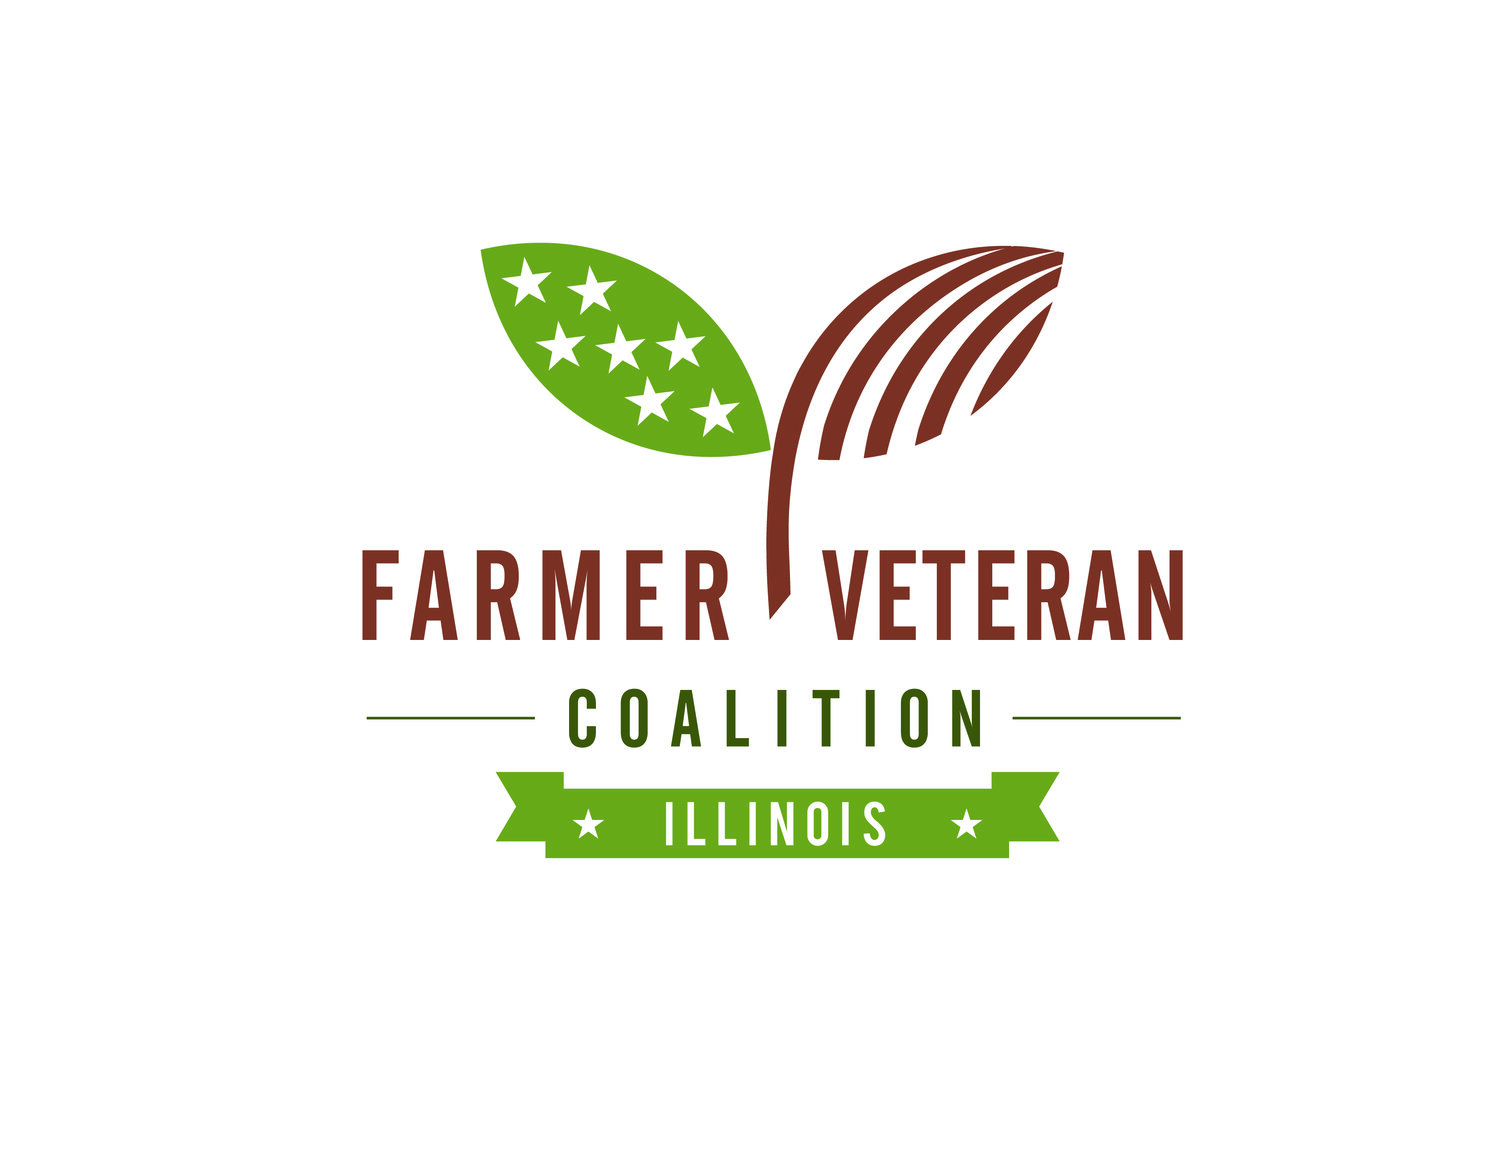 Farmer Veteran Coalition of Illinois